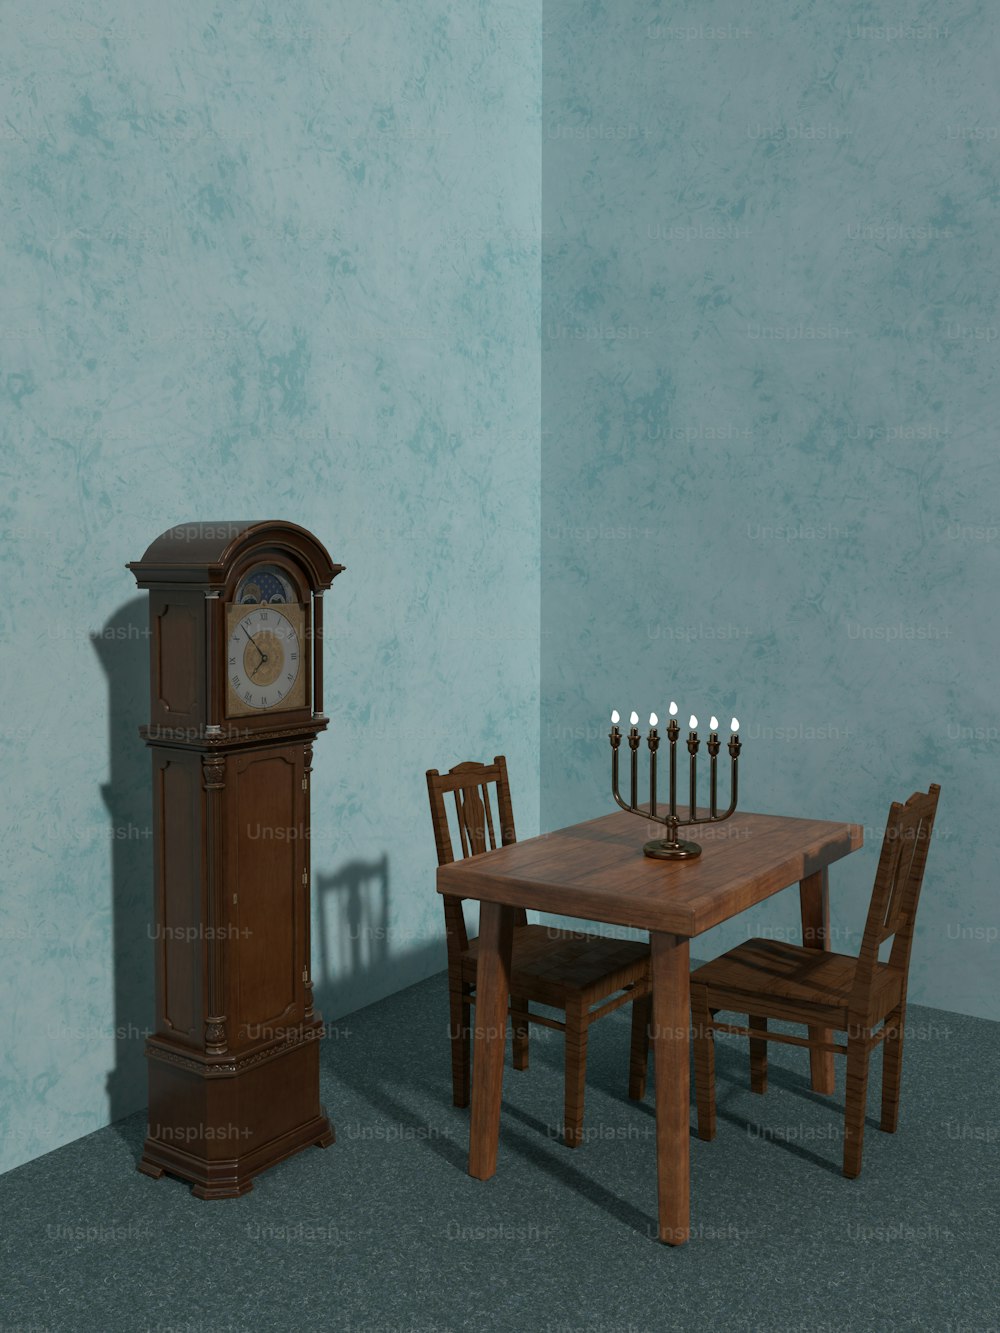 une table en bois avec des chaises et une horloge grand-père